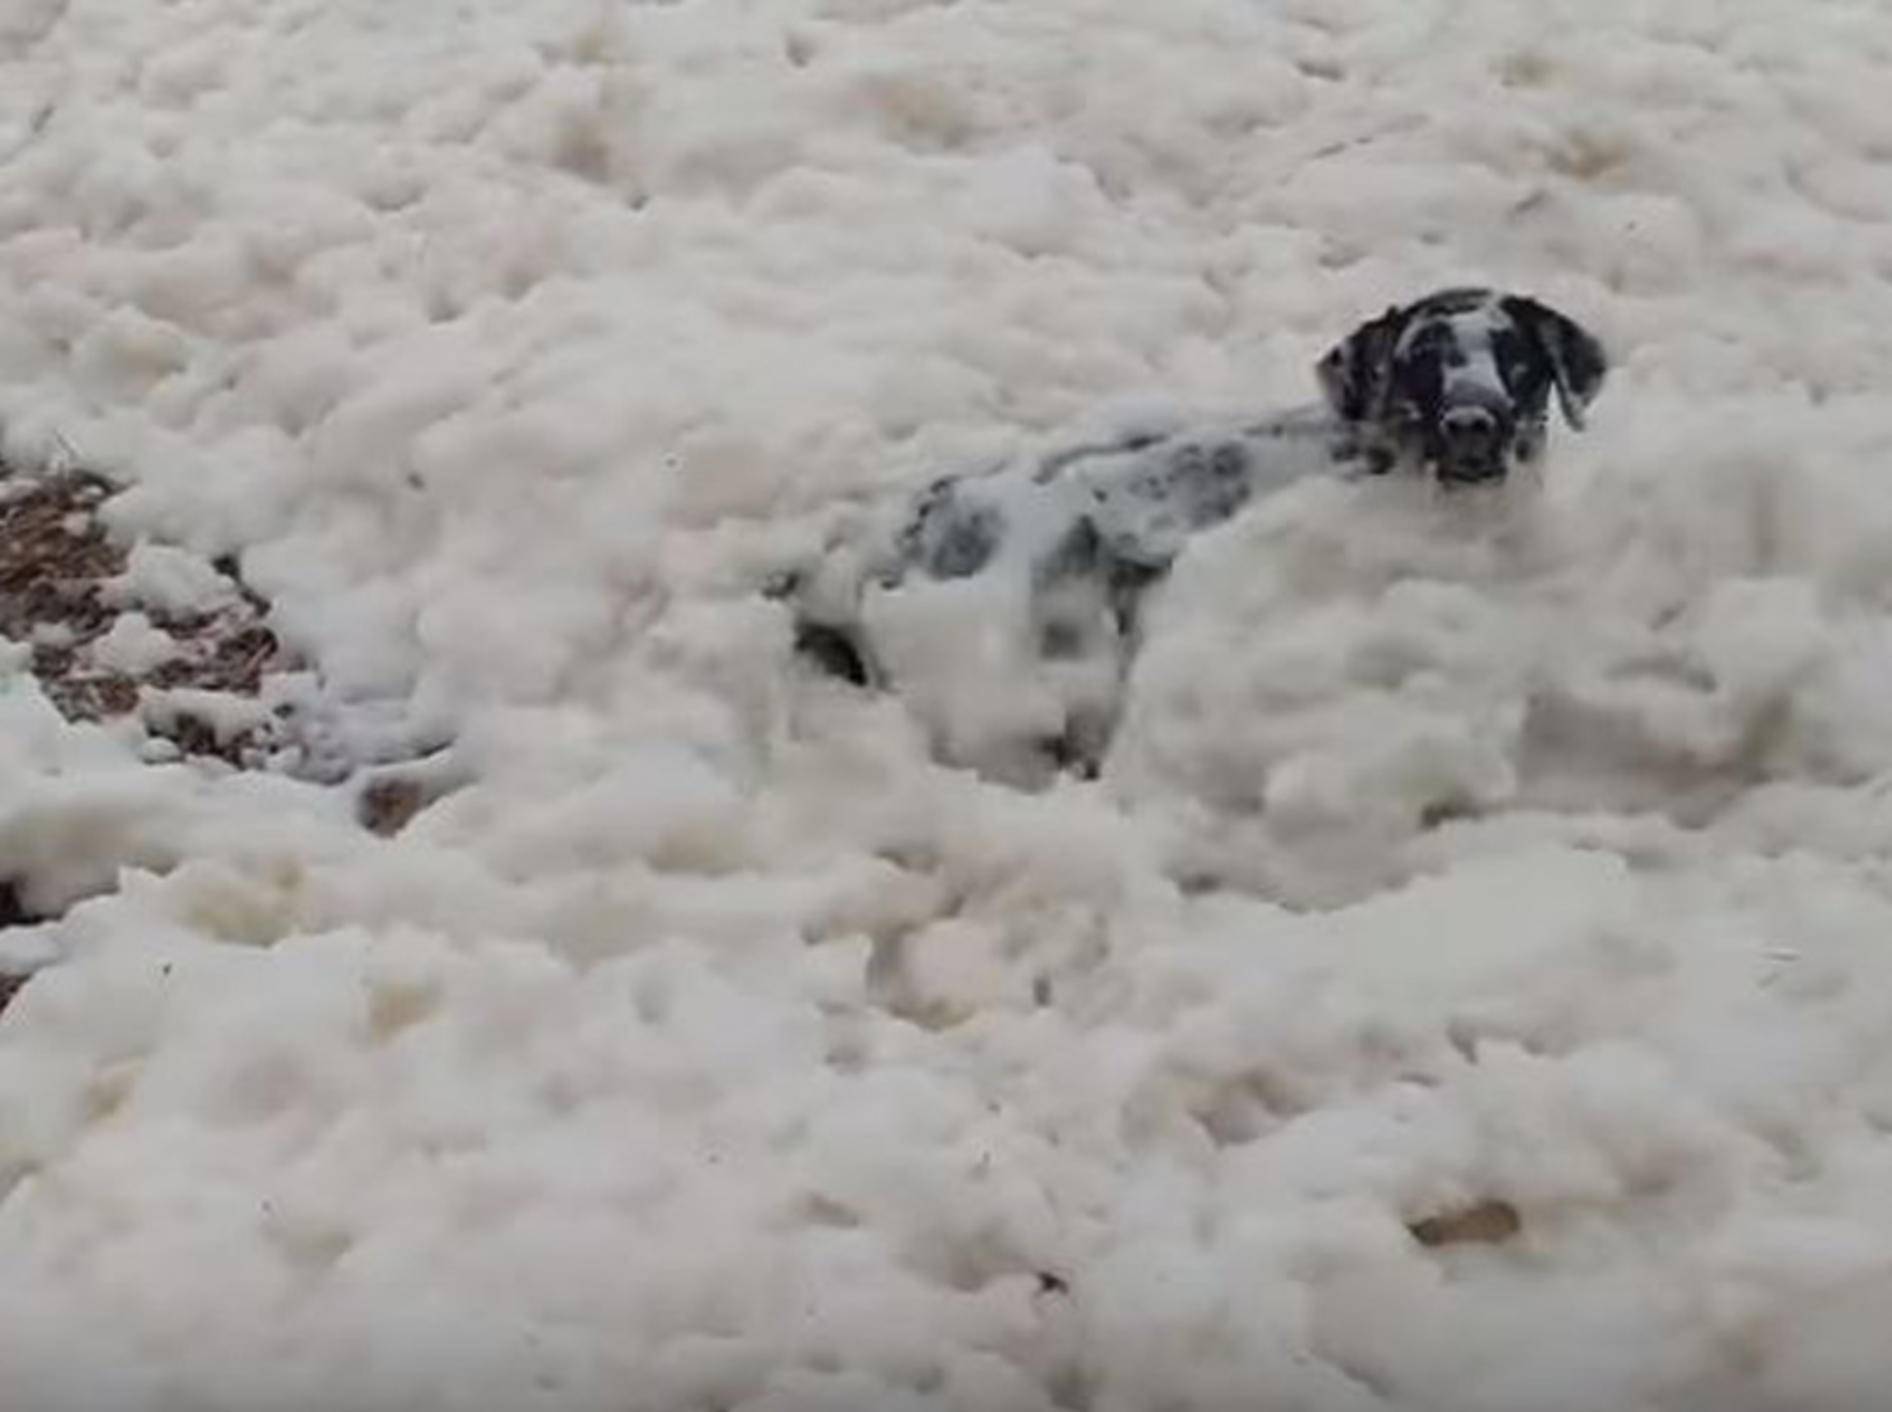 Hund Rosco genießt sein Schaumbad am Strand - Bild: YouTube / RM Videos